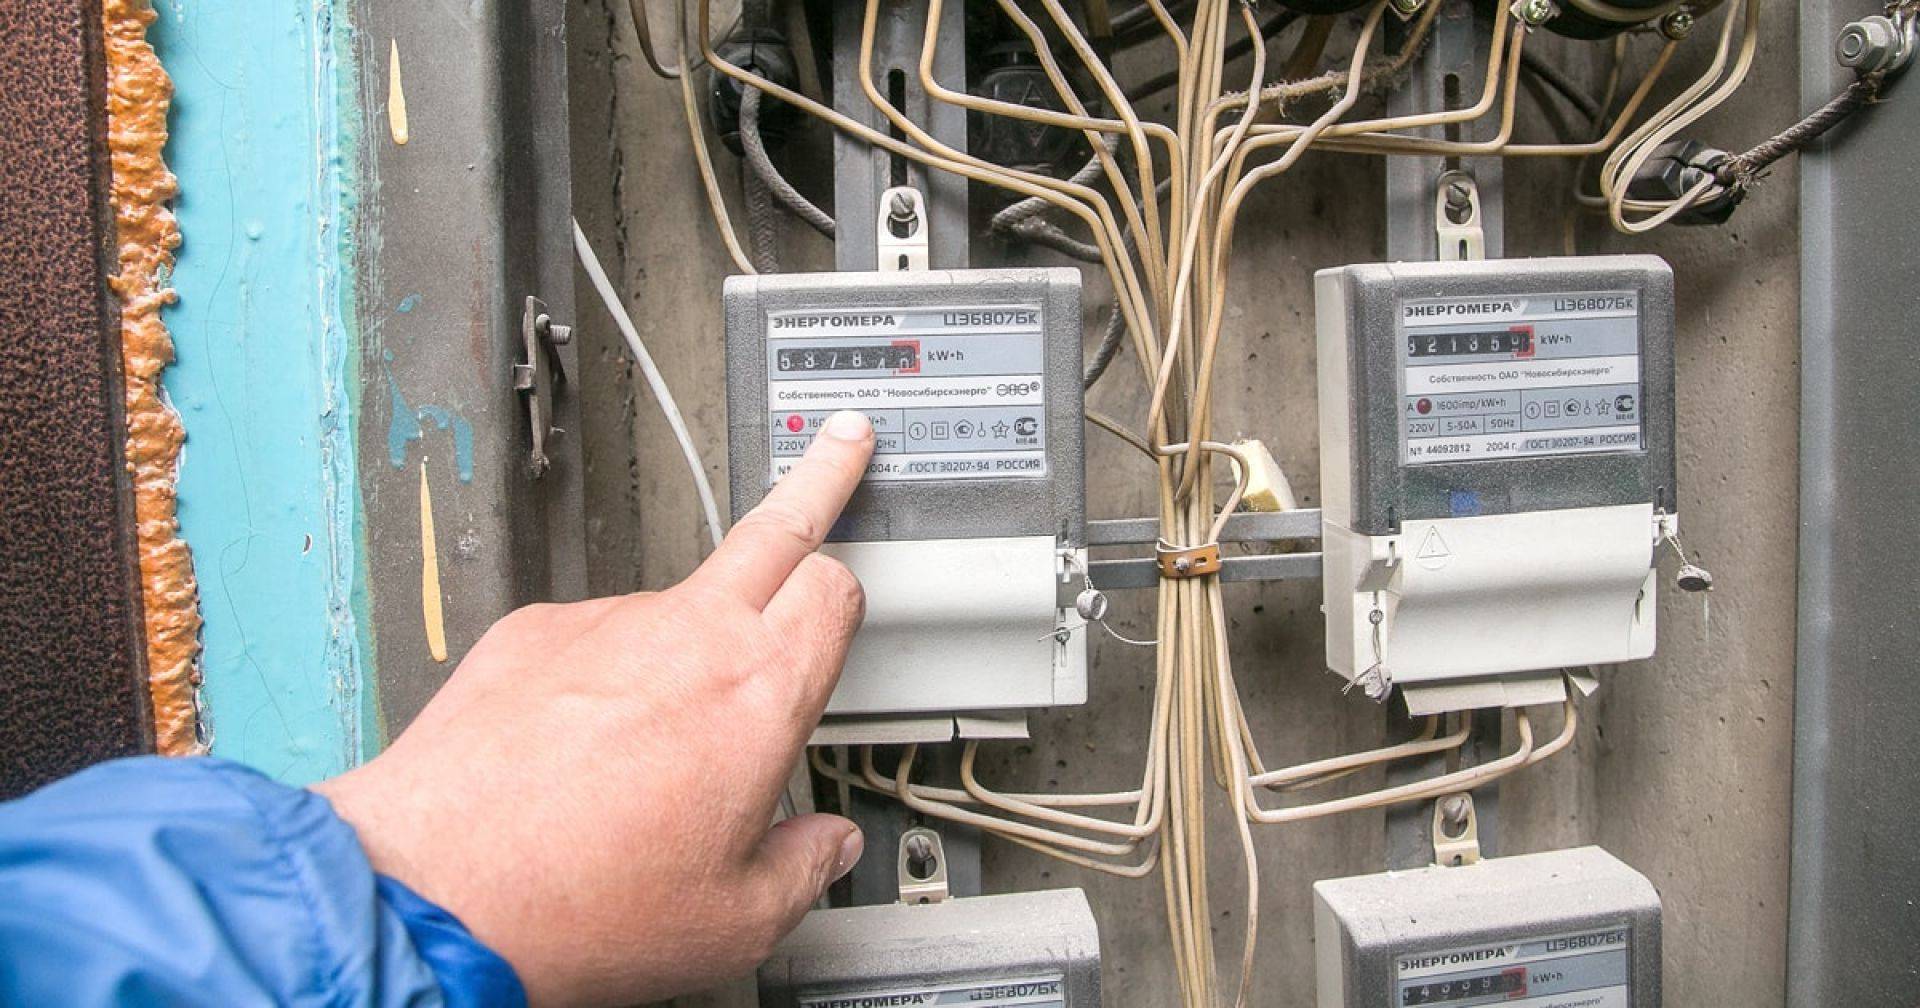 Что делать если электросчетчик намотал много киловатт, но электричеством не пользовались